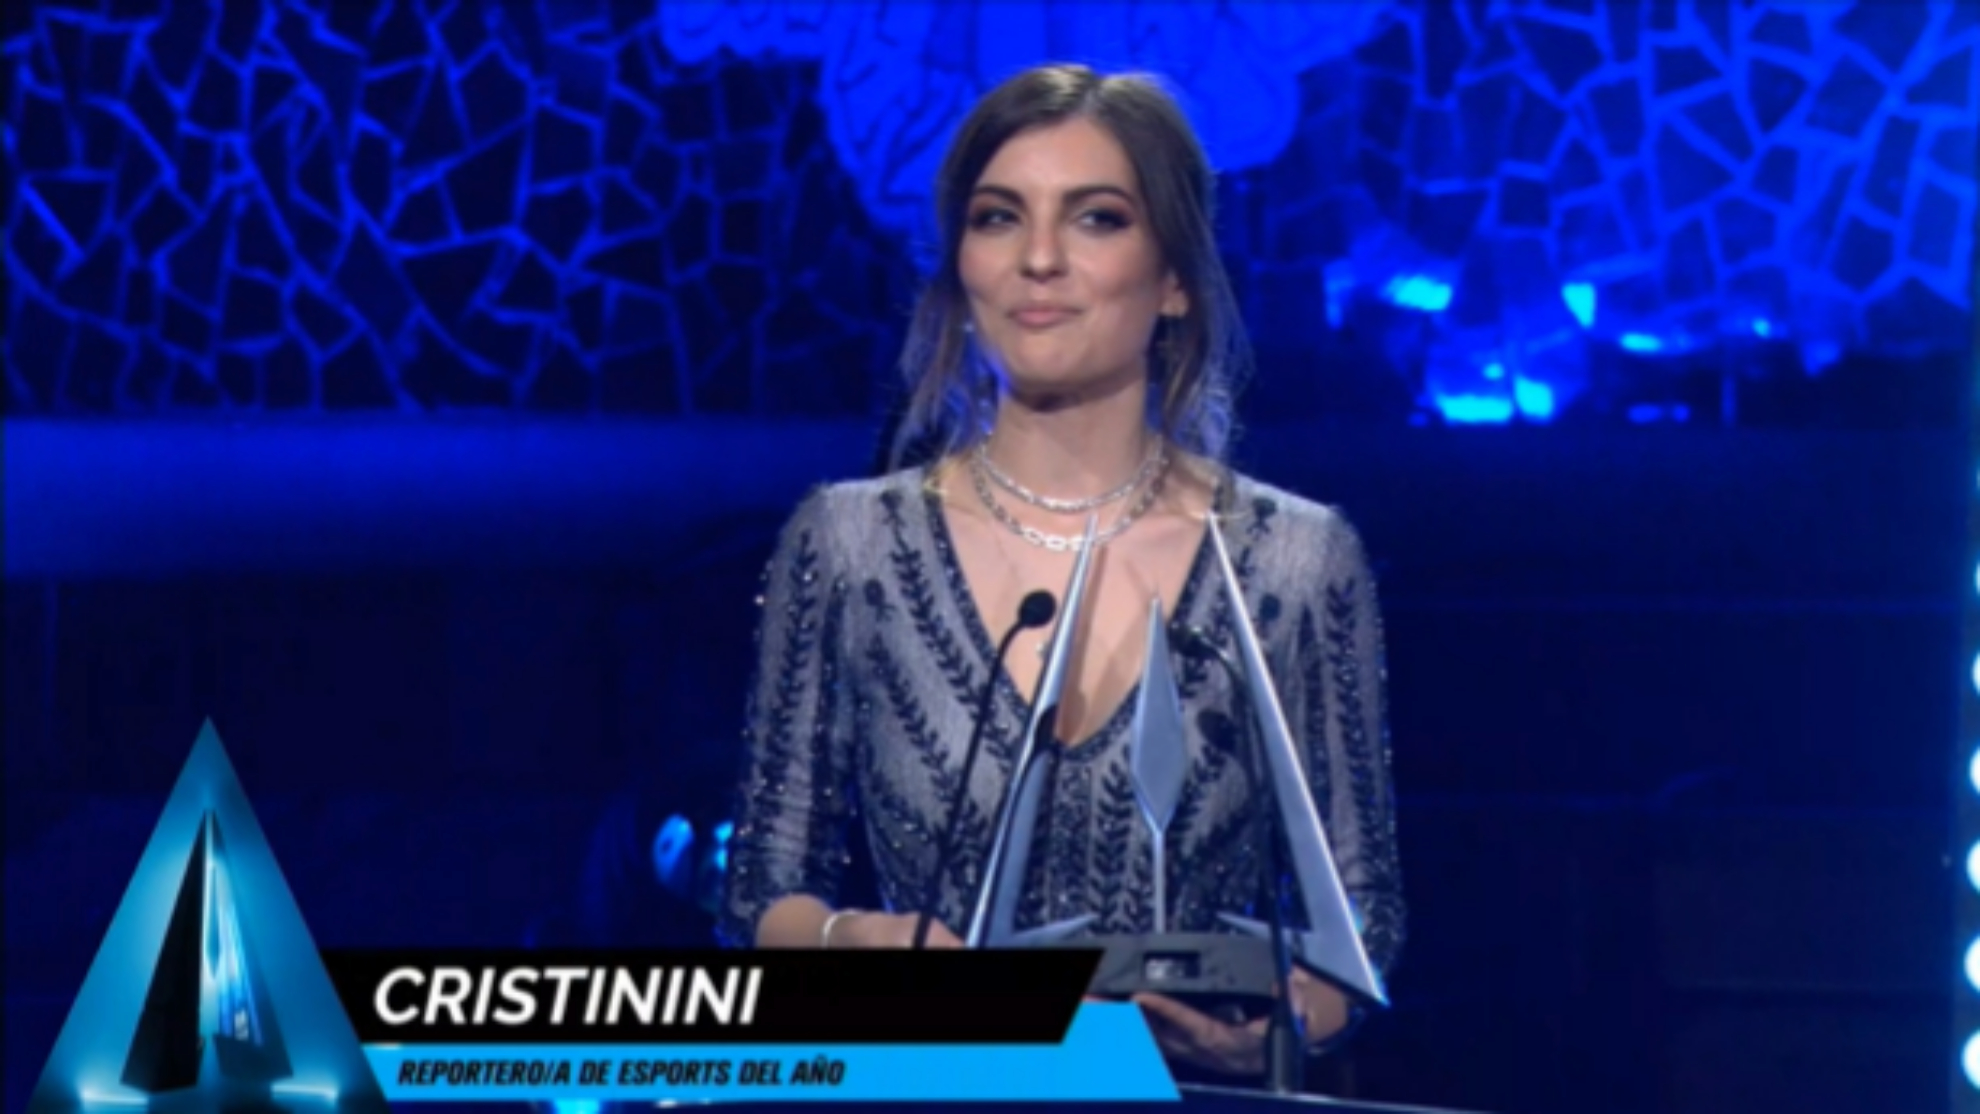 Cristinini grana el premio a "Mejor reportera de esports"